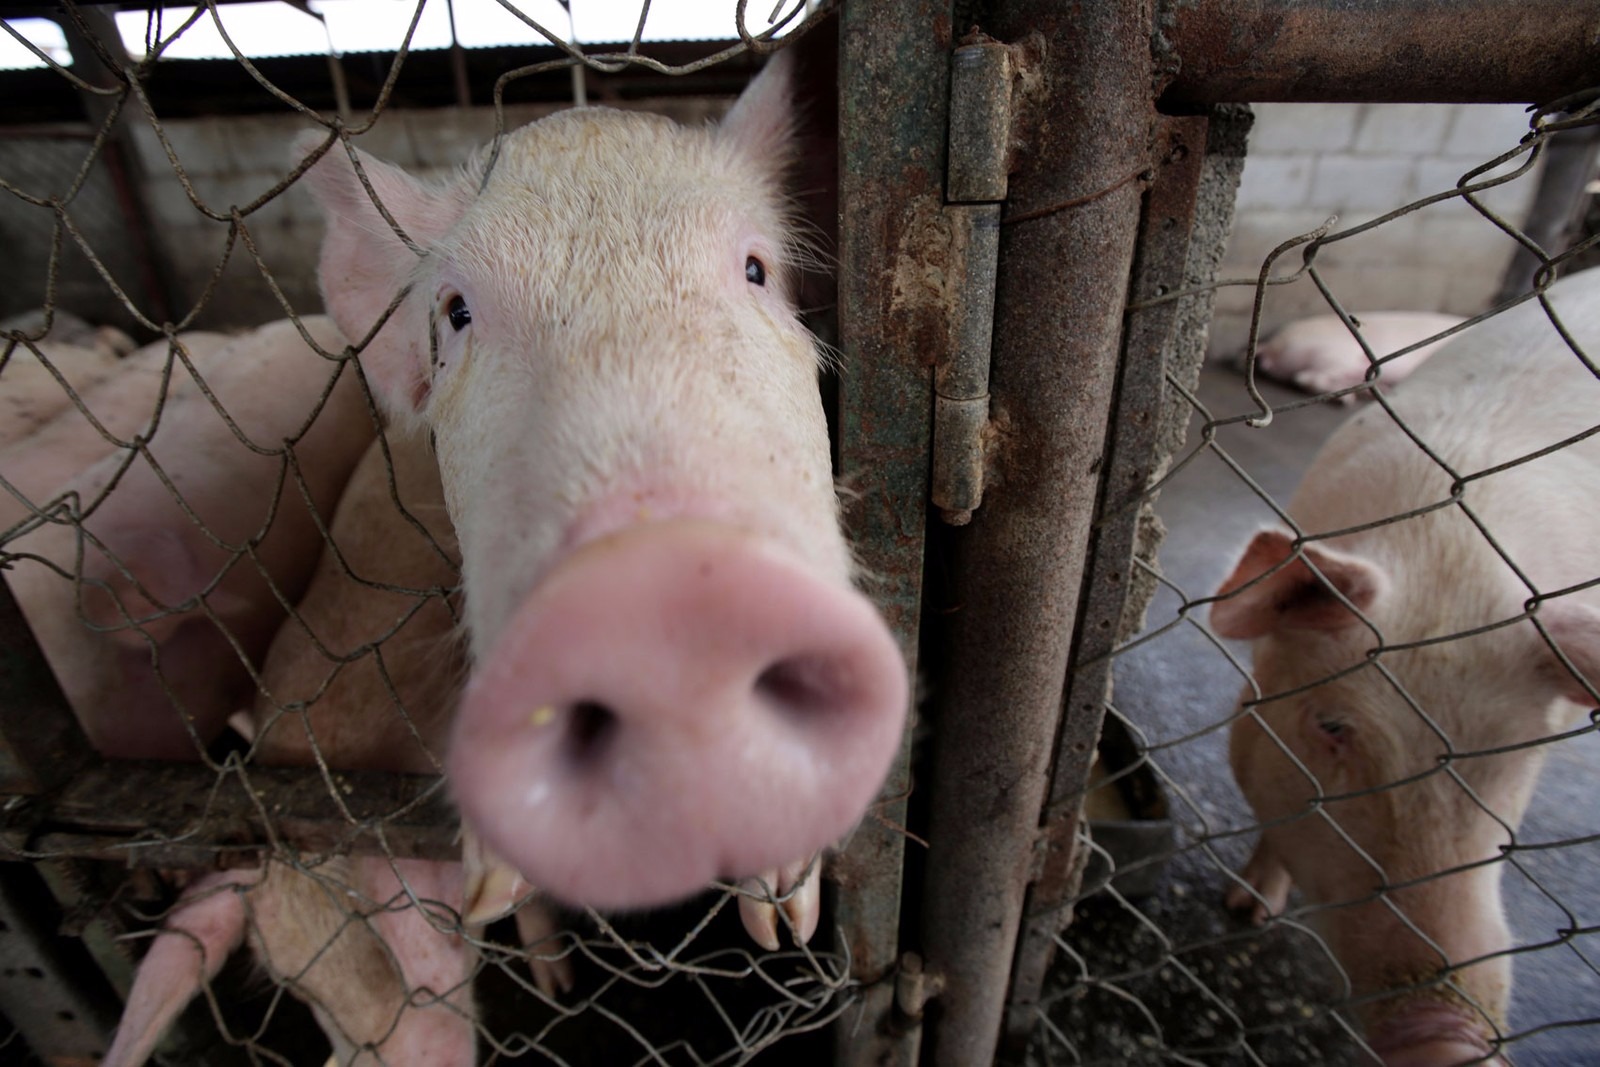 Porcos foram resgatados, depois sacrificados e oferecidos como linguiça aos bombeiros (foto ilustrativa) (Foto: Reuters)